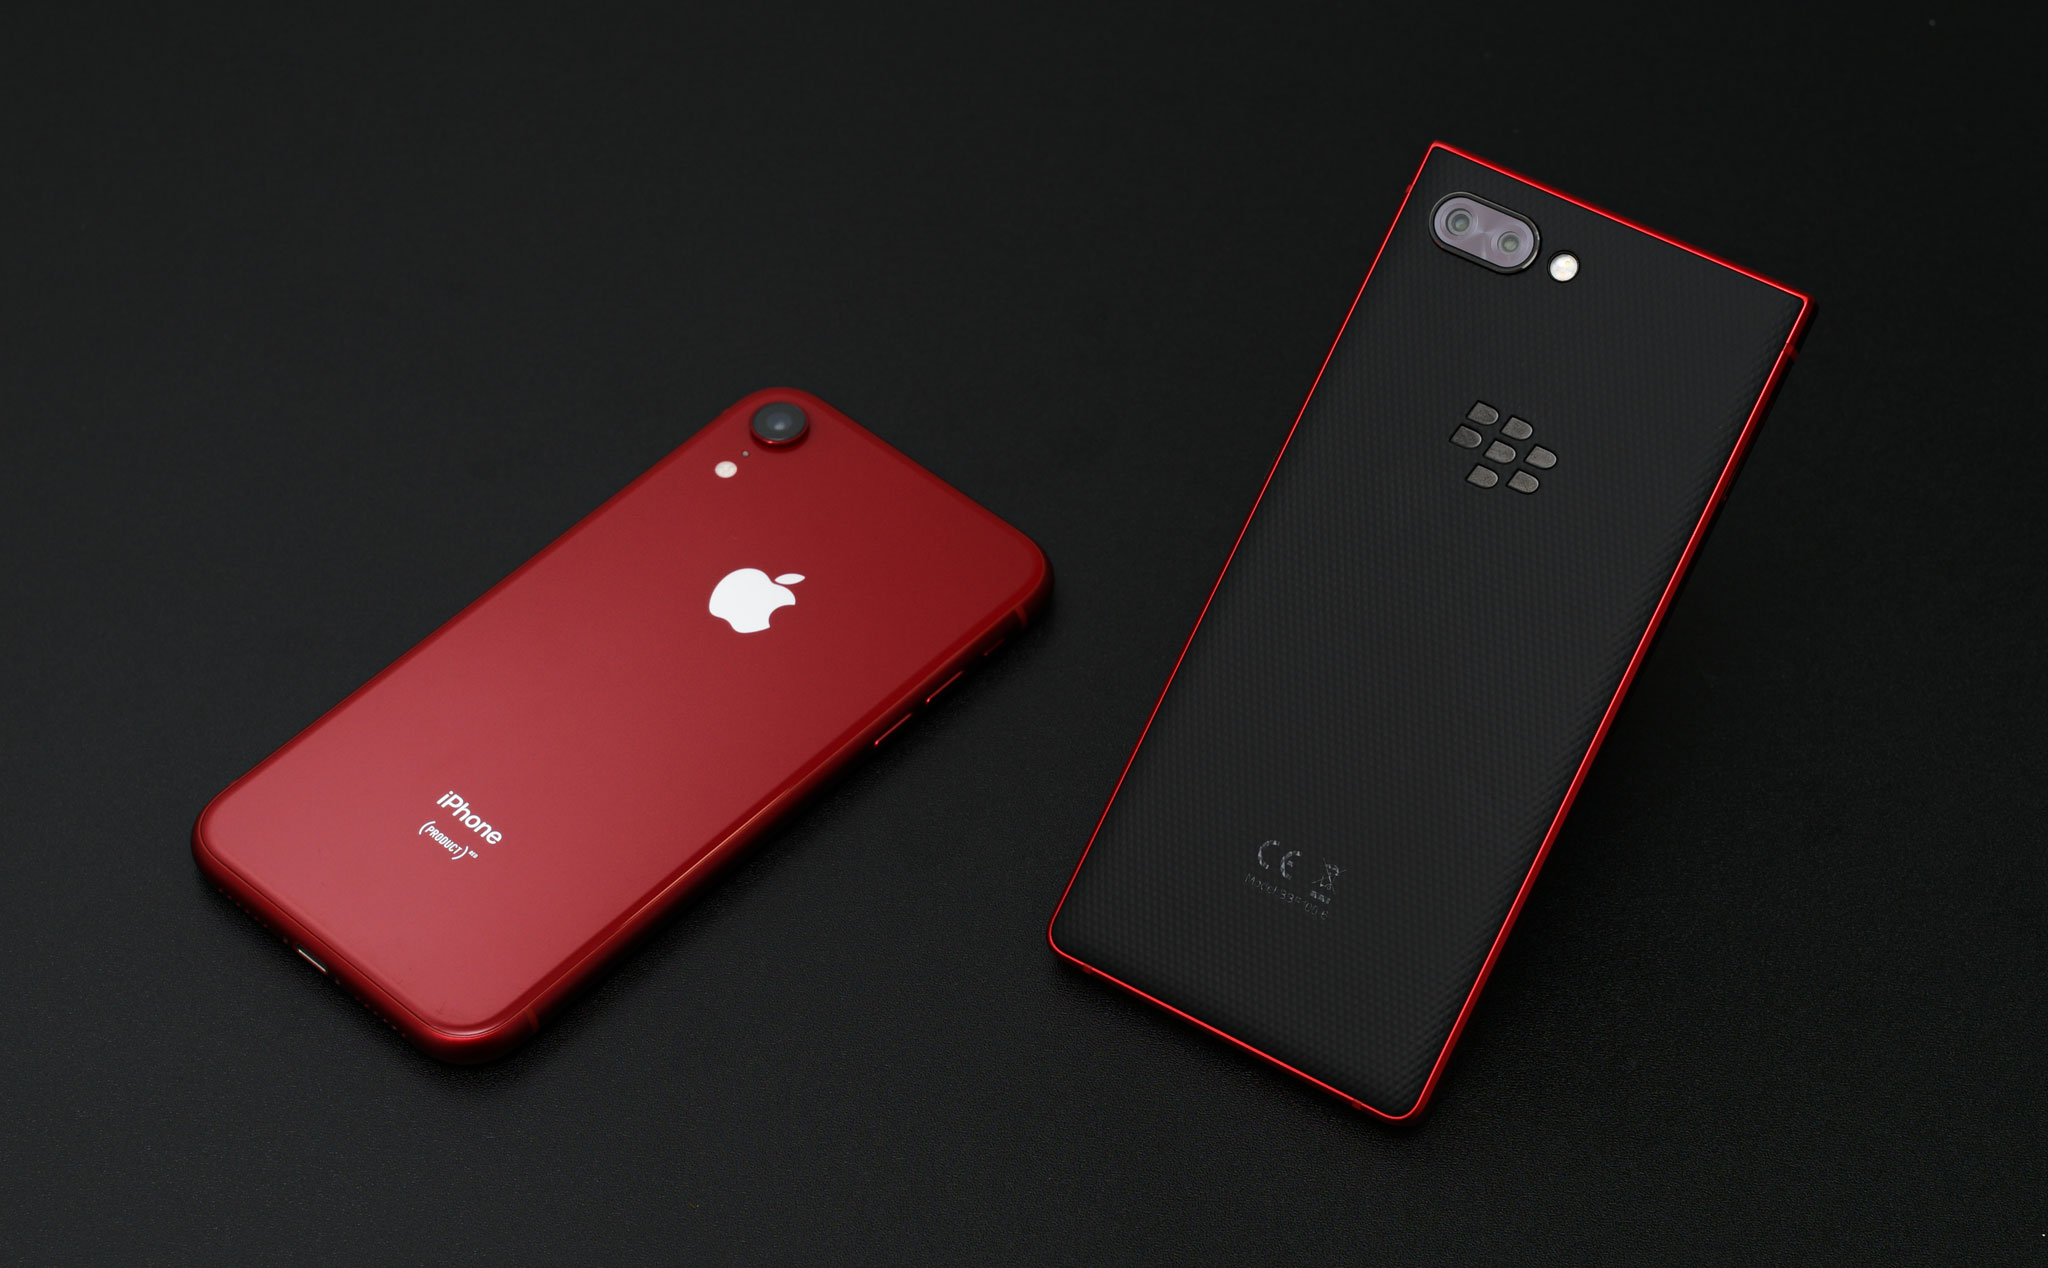 BlackBerry Key2 màu đỏ đầy ấn tượng và iPhone XR màu đỏ Product RED sẽ khiến bạn phải trầm trồ và ngạc nhiên. Được trang bị các tính năng tiên tiến nhất, hai chiếc điện thoại này đều là những chiếc điện thoại đáng mua nhất hiện nay. Hãy xem hình ảnh để tìm hiểu thêm về sự độc đáo và đẳng cấp của các chiếc điện thoại này.